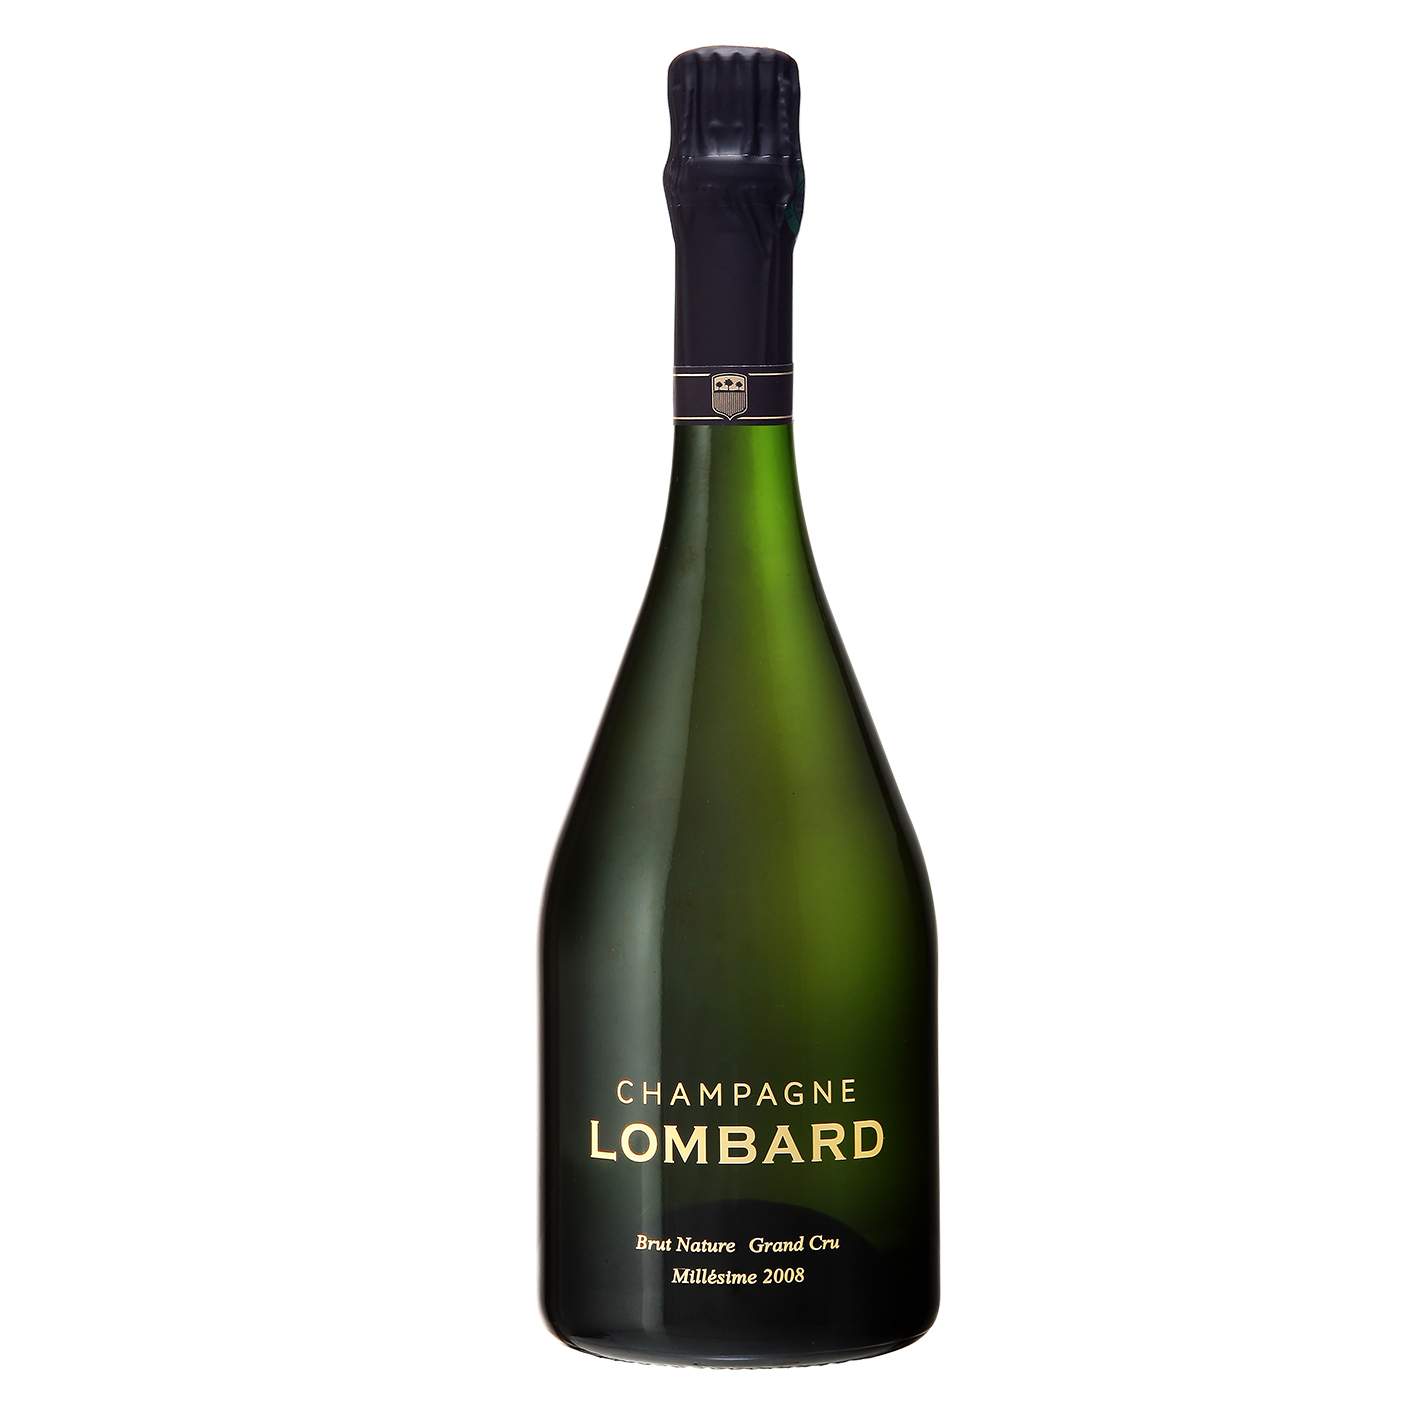 Champagne Lombard Millesime 2008. Botella de 75cl con cierre de corcho. Su etiqueta es transparente y en ella puede apreciarse, en color dorado, los nombres de la bodega y de este vino espumoso. En este caso, Champagne Lombard Millesime 2008.